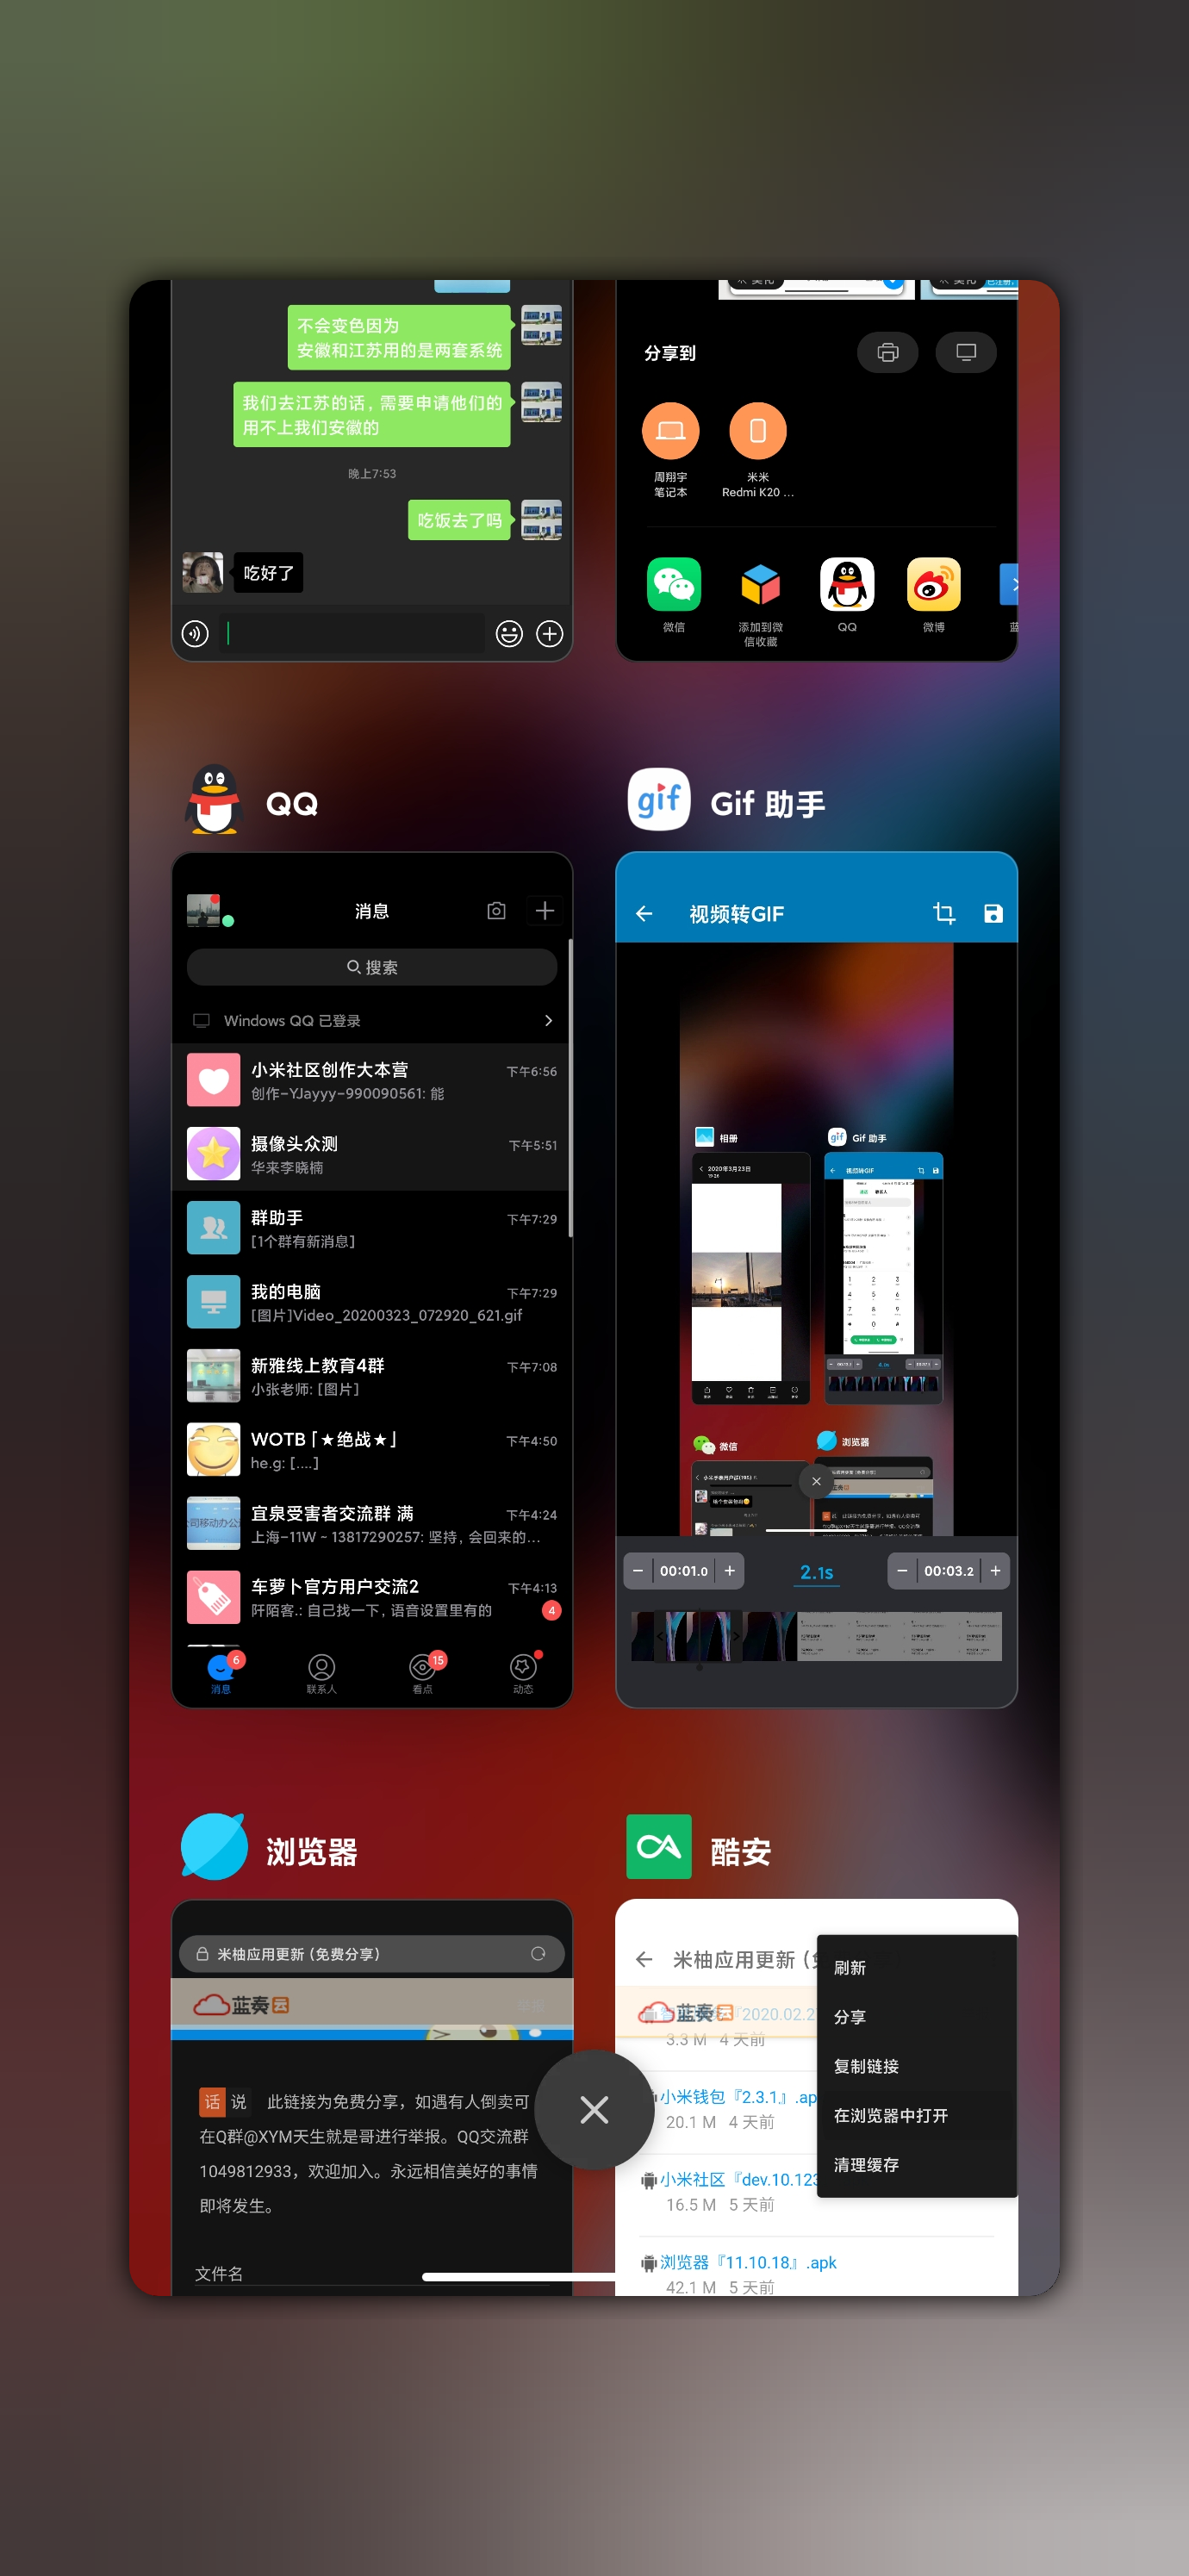 ميزات Xiaomi القادمة MIUI 12 المتوقعة 3